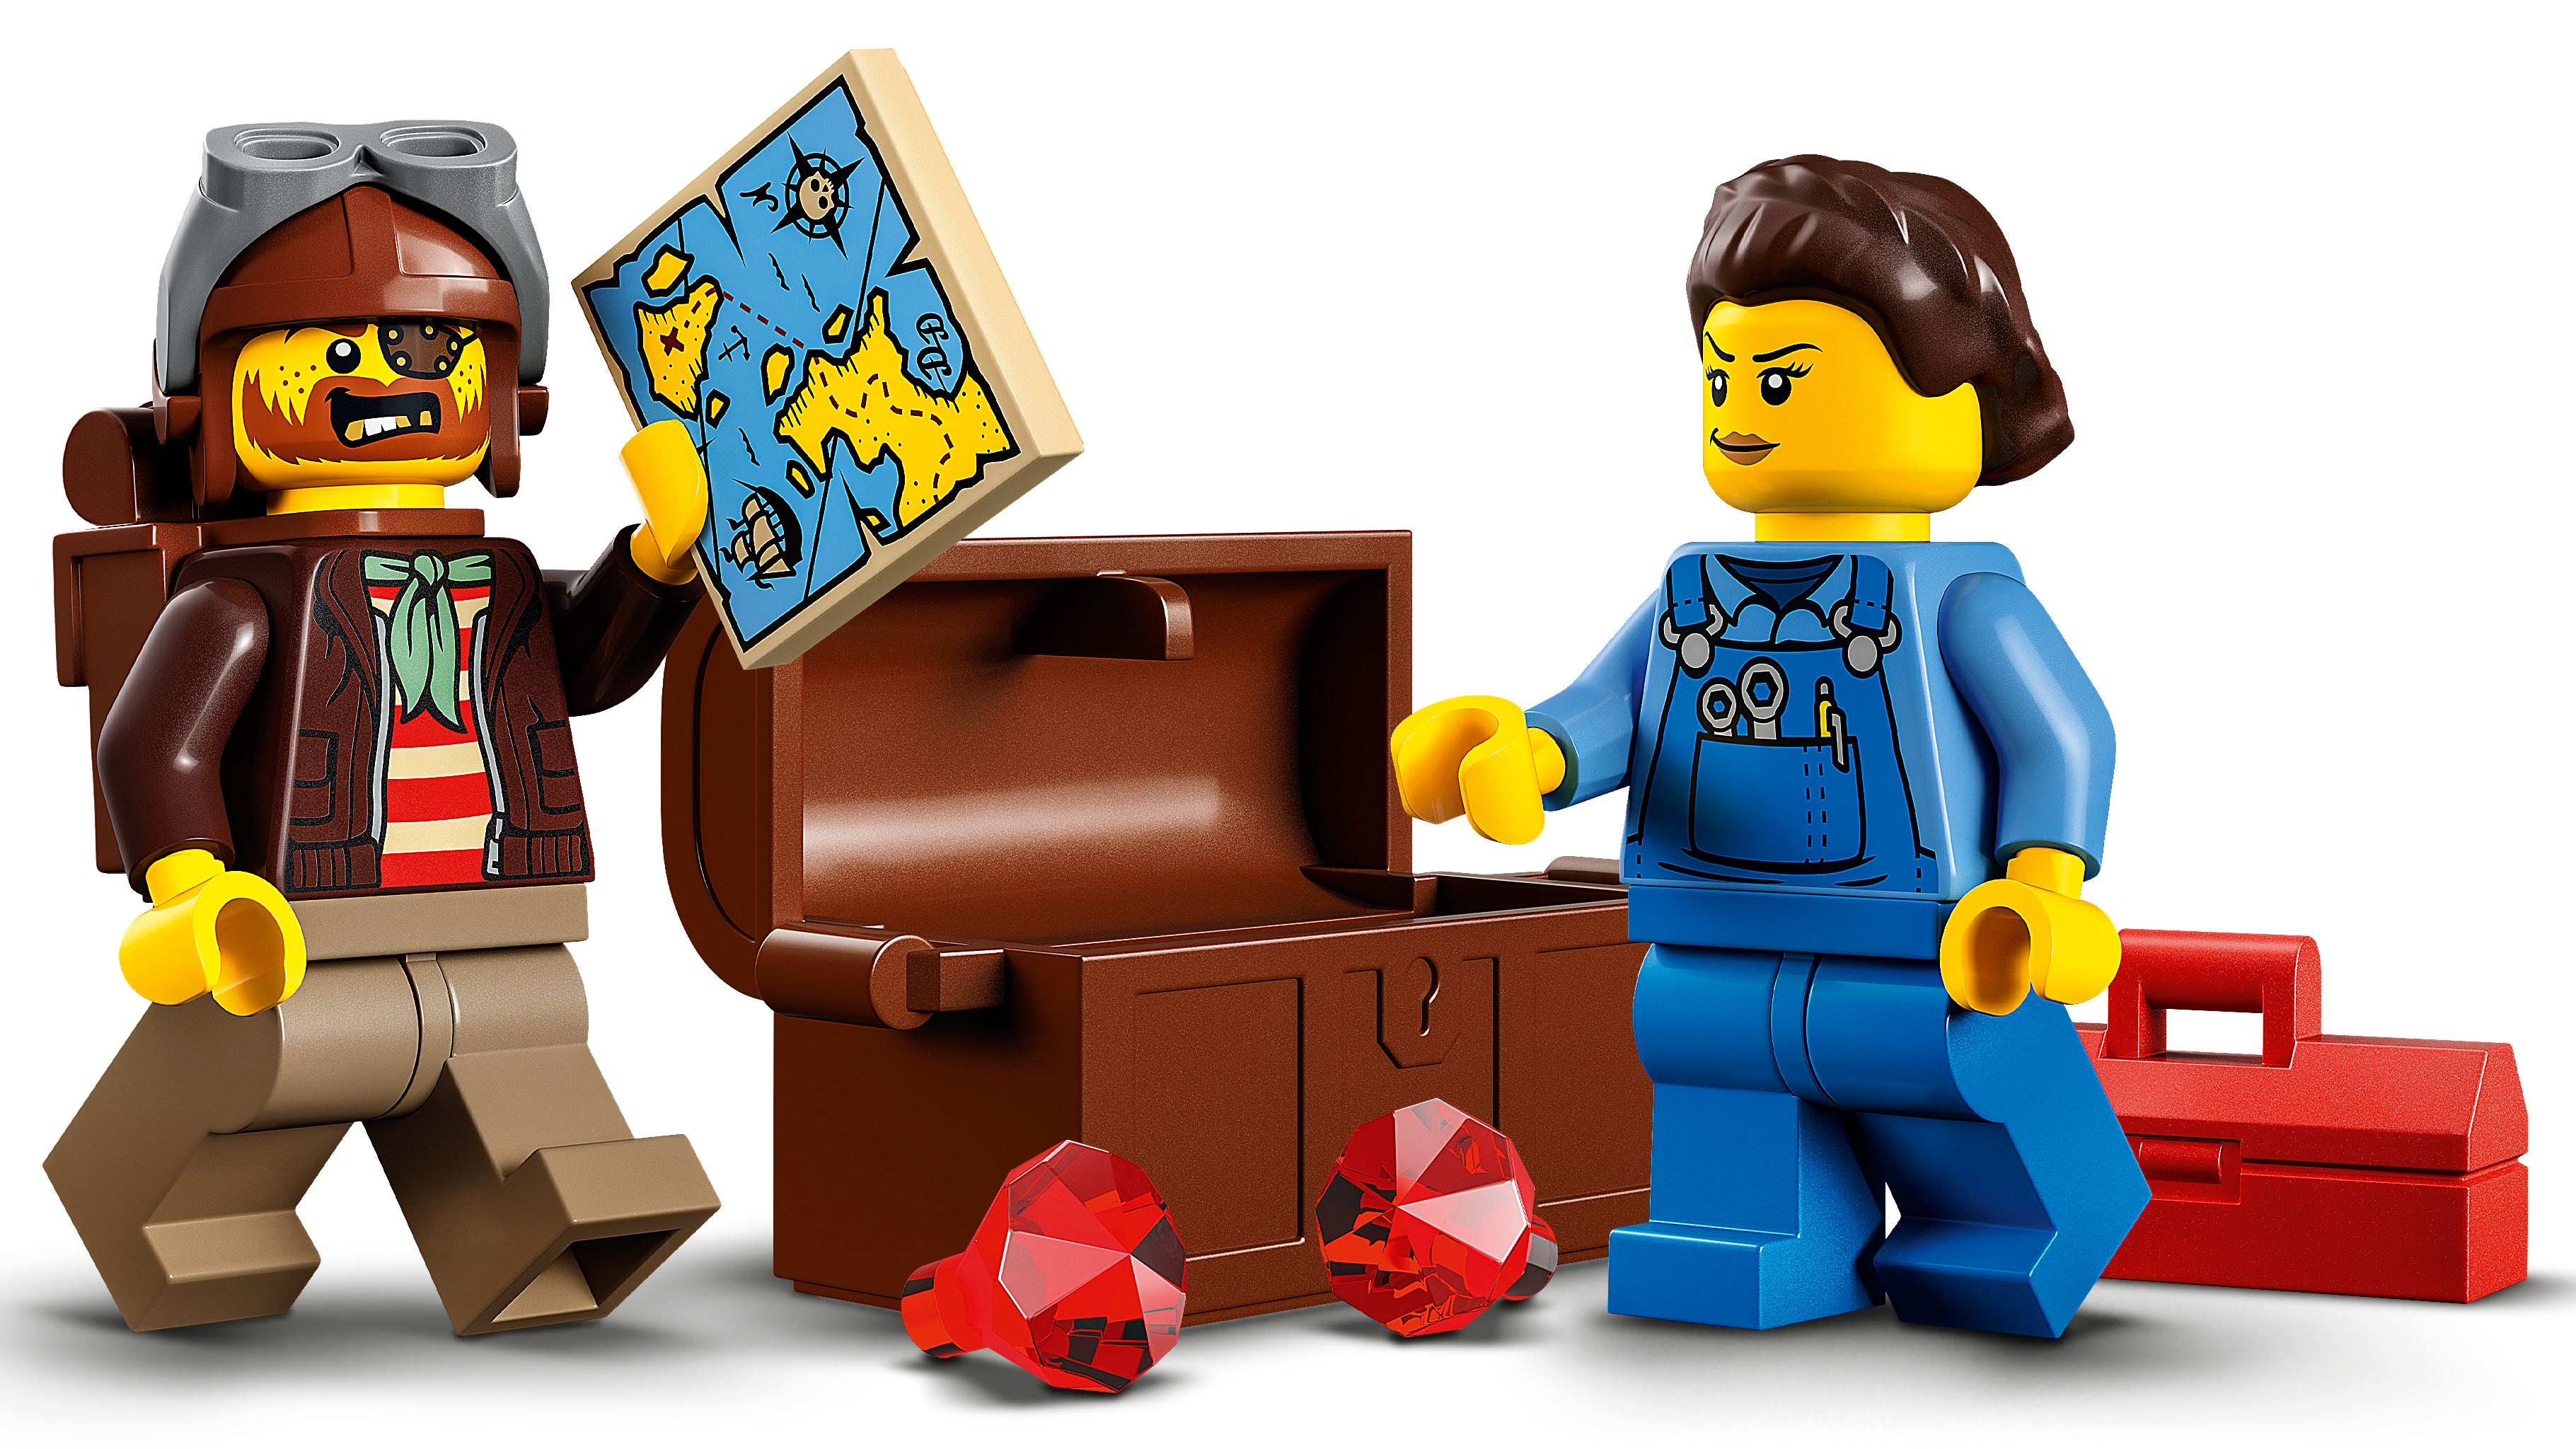 シャークアタック・スタントチャレンジ 60342 - レゴ®シティ セット - LEGO.comキッズ